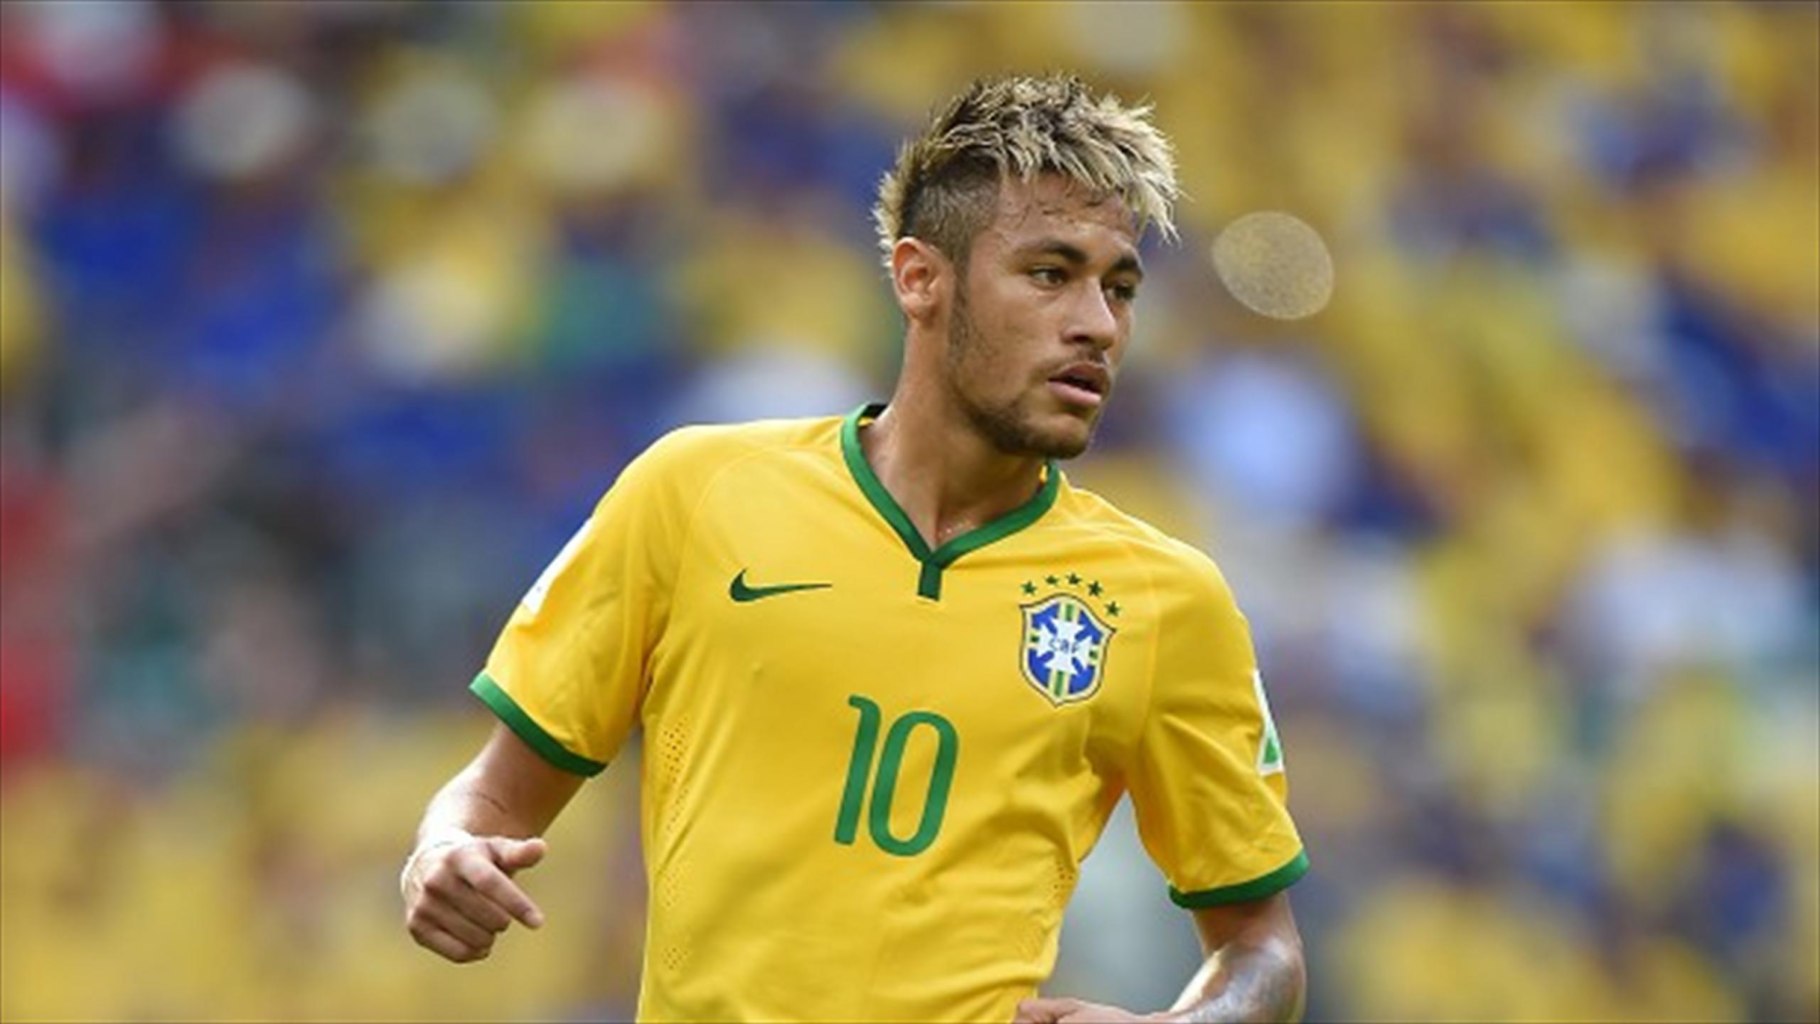 Neymar Top Hd Wallpapers Neymar Best - Neymar Hd Pic Brazil - HD Wallpaper 